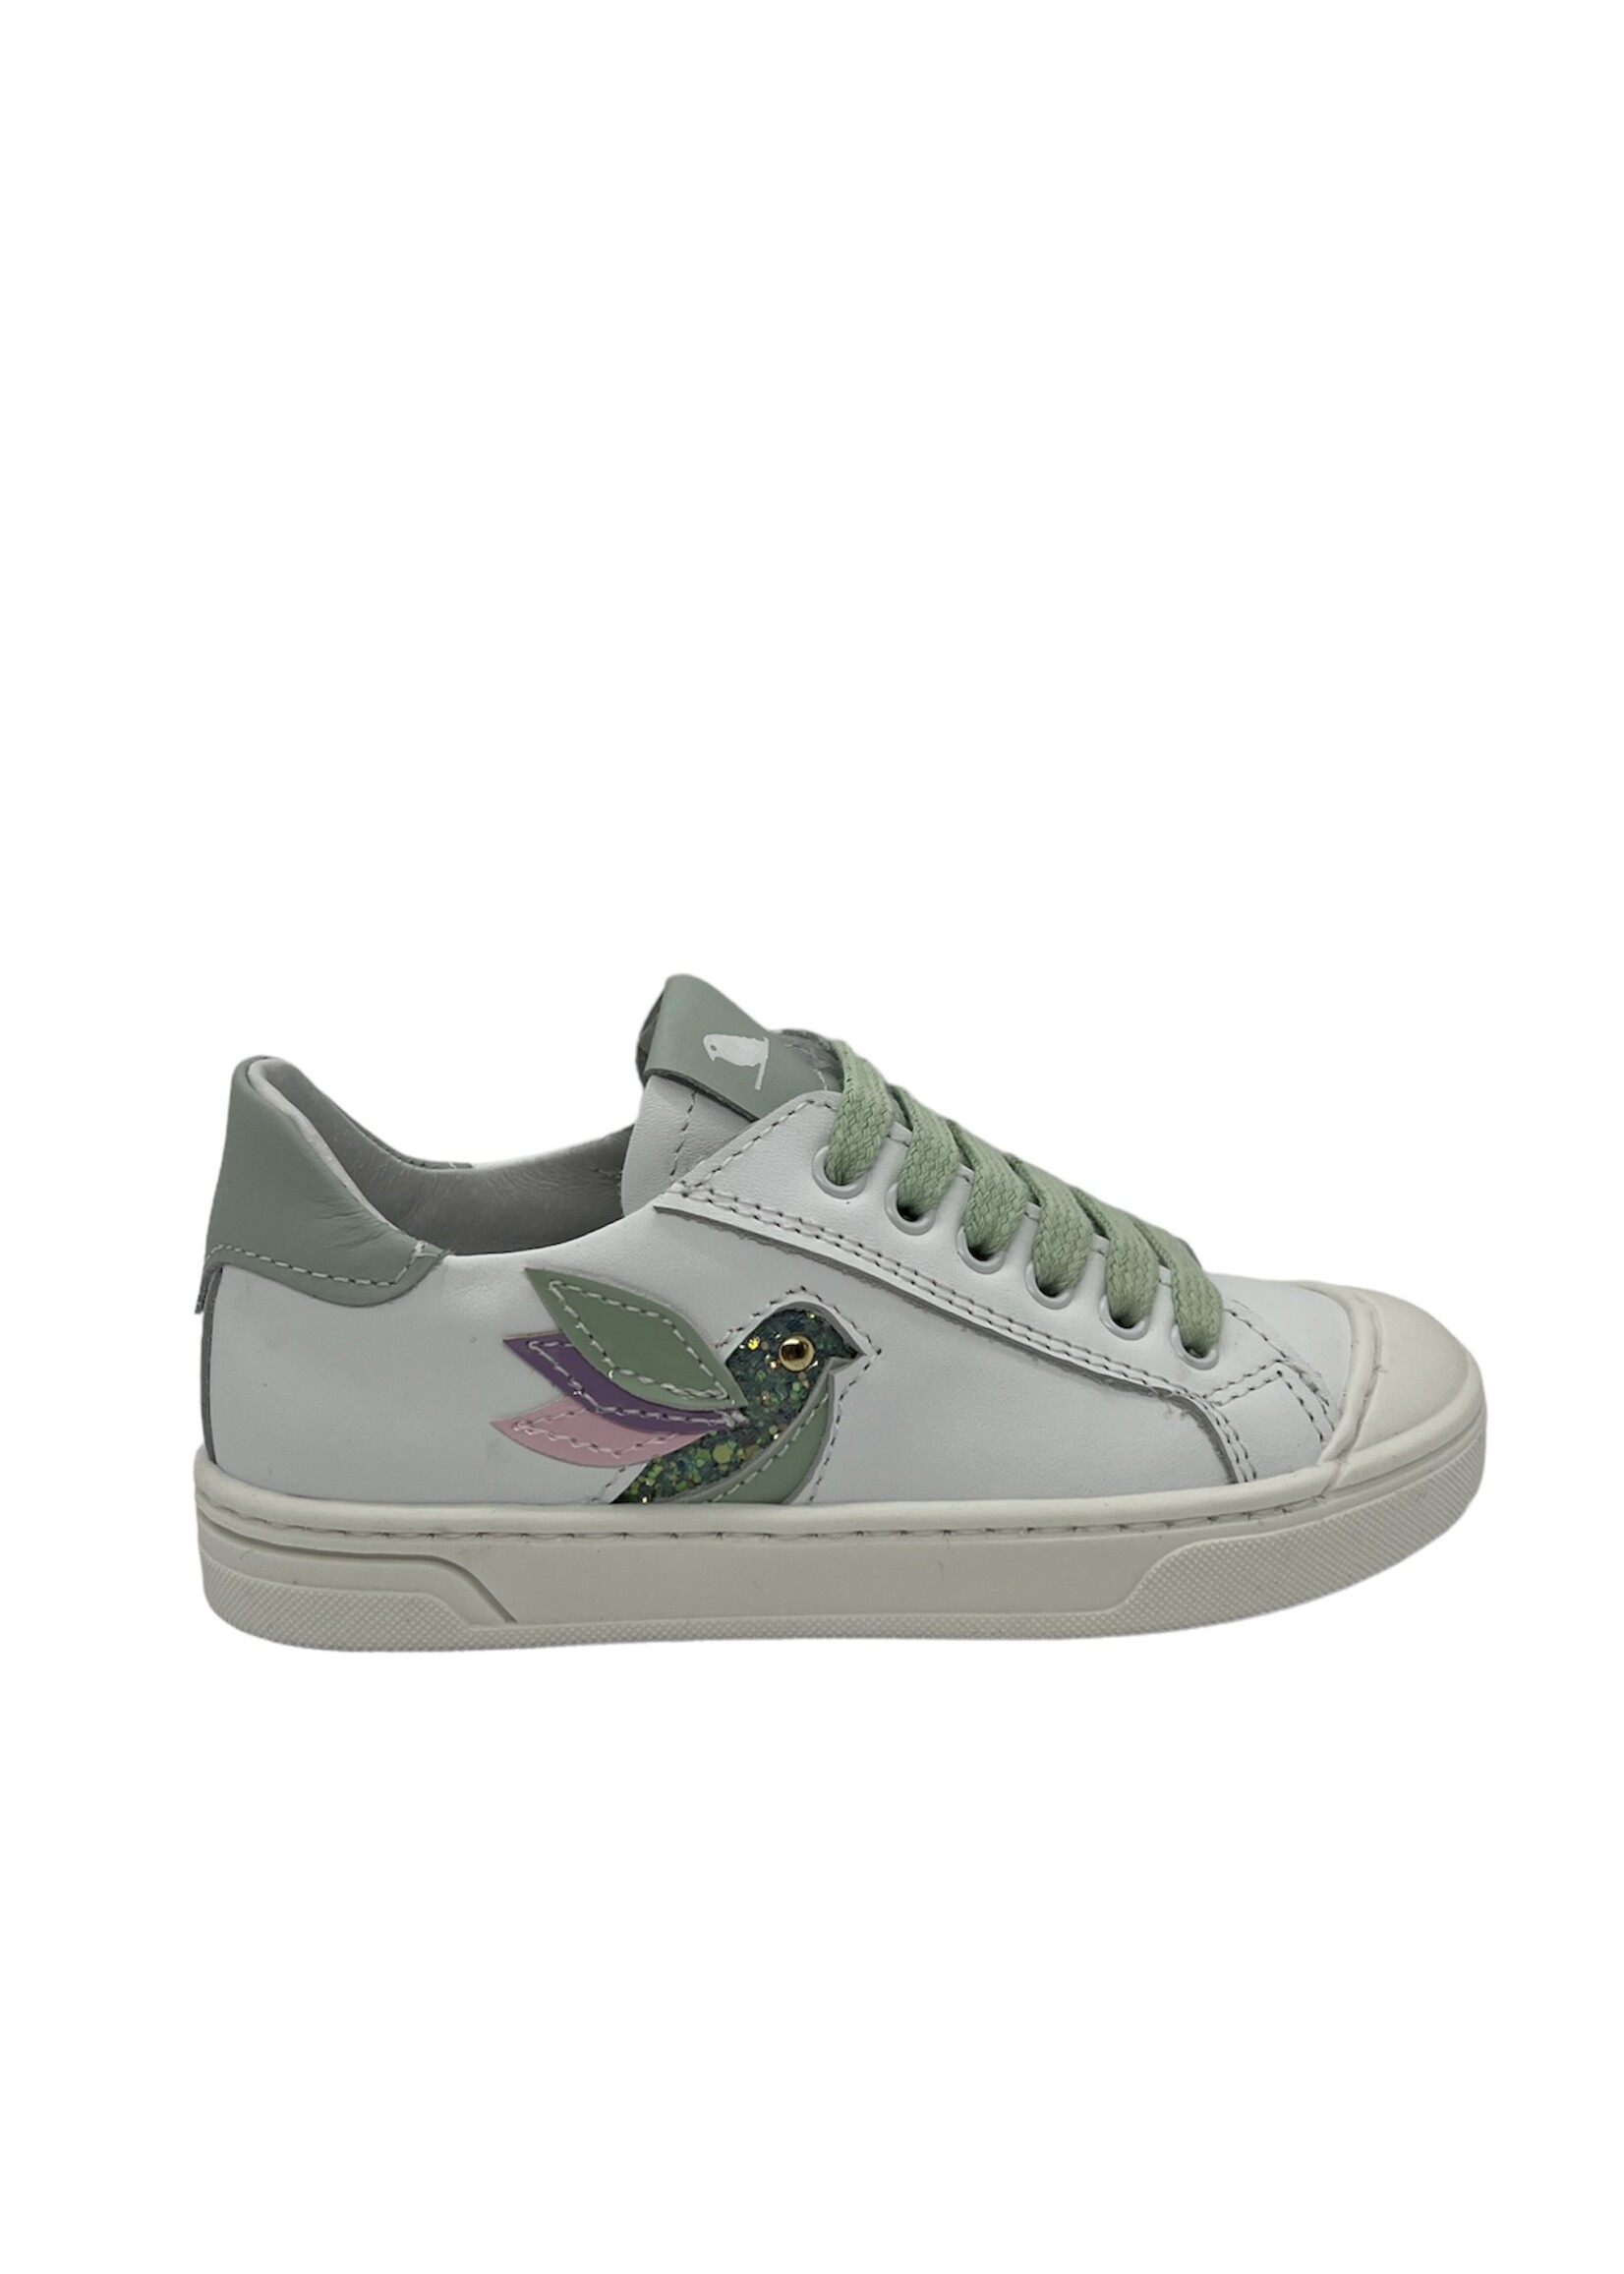 Bana & Co sneaker wit groen vogel